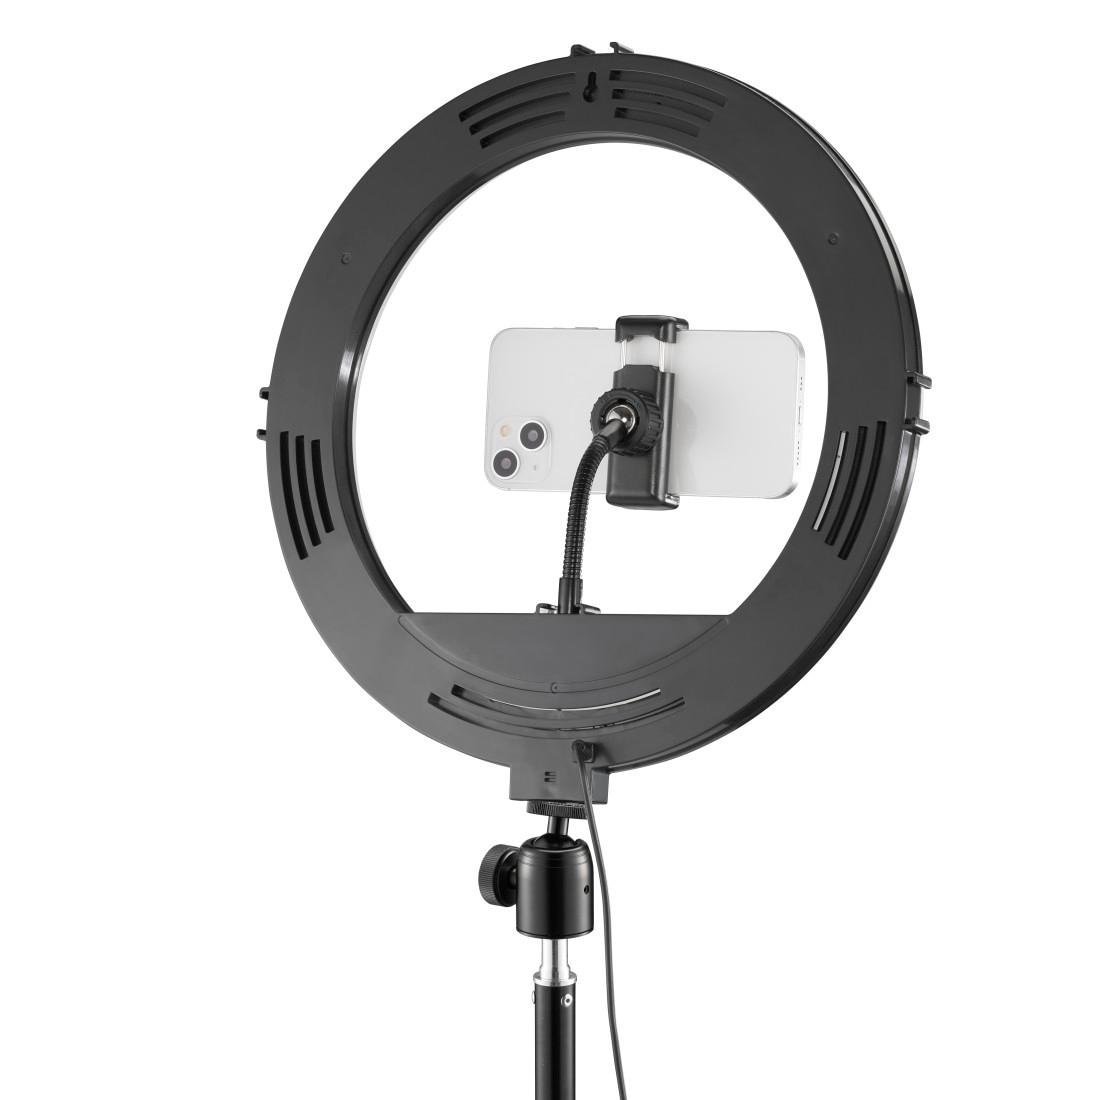 Hama Ringlicht »Handy-Ringlicht mit Stativ für Selfies, Videos (210 cm, 160 LED, 12")«